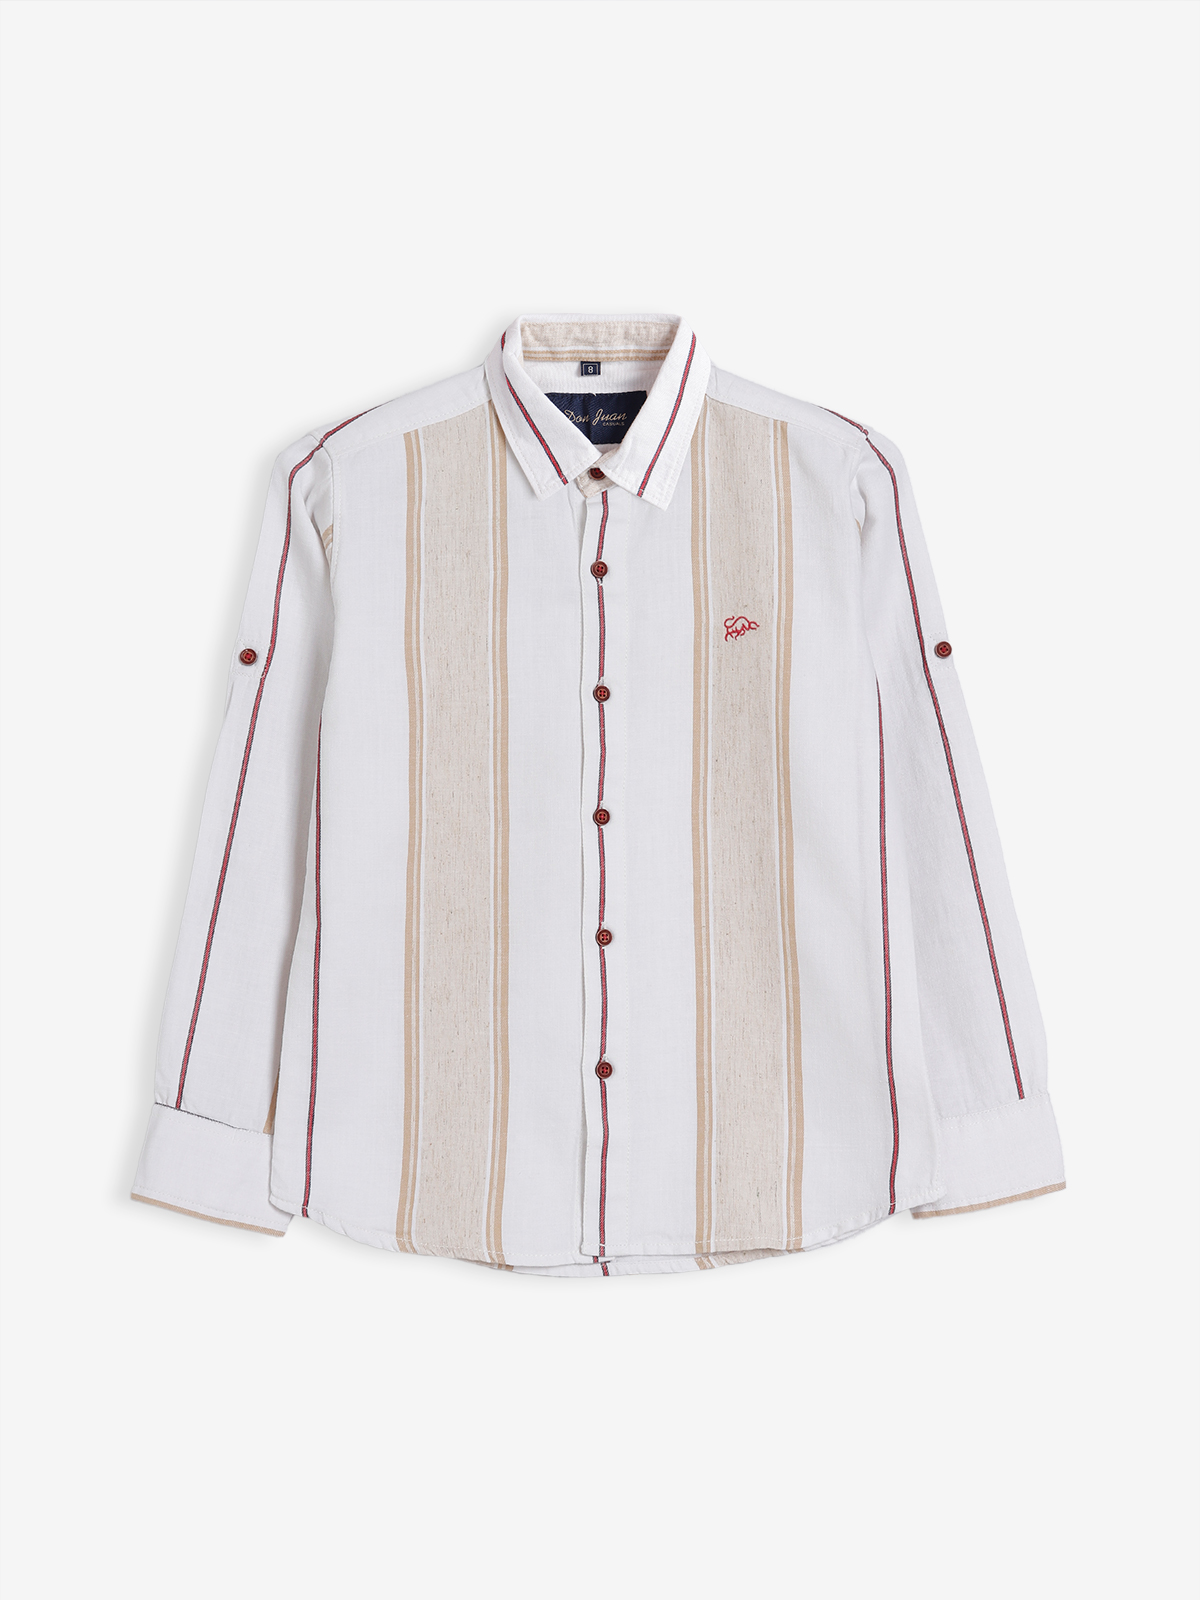 DNJS white and red stripe shirt - G3-BCS2737